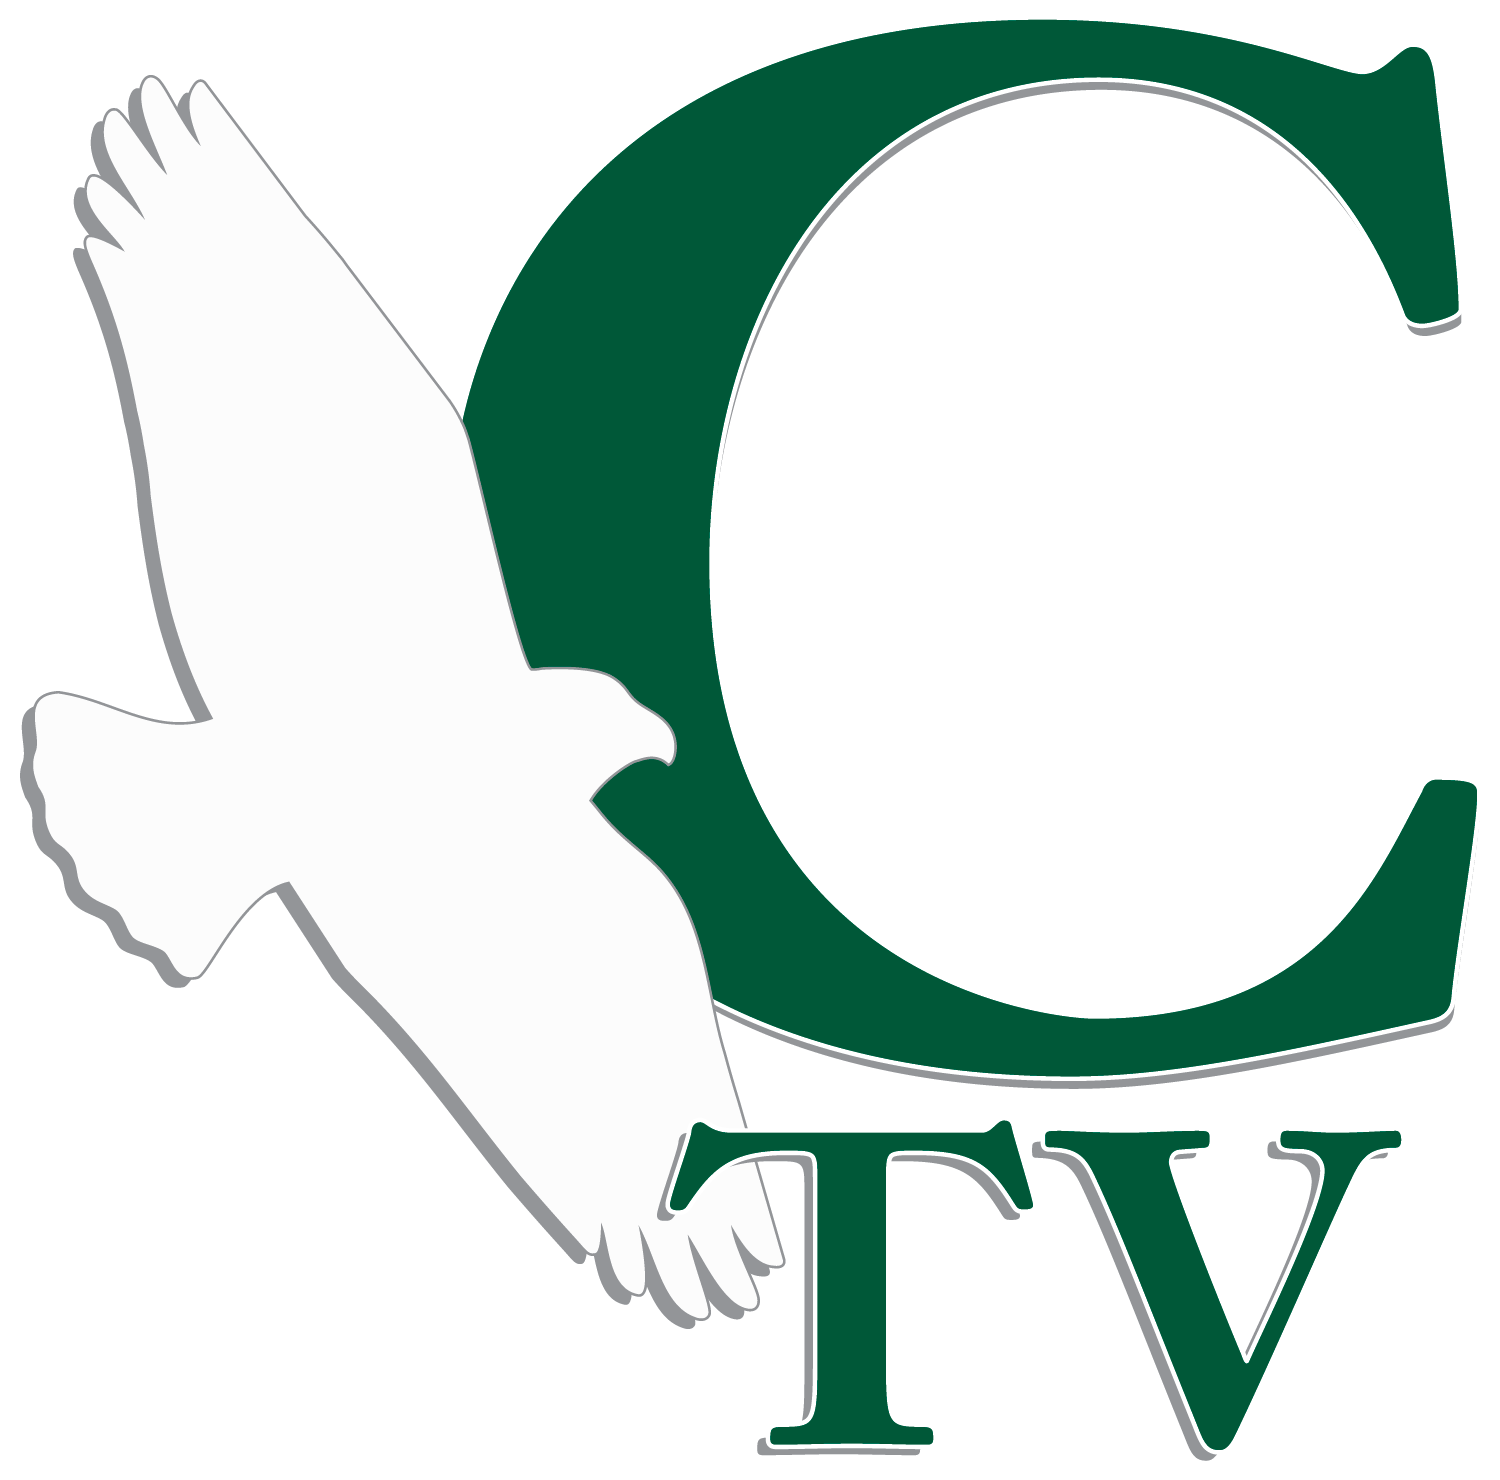 Profilo CTV The Calabasas Canale Tv